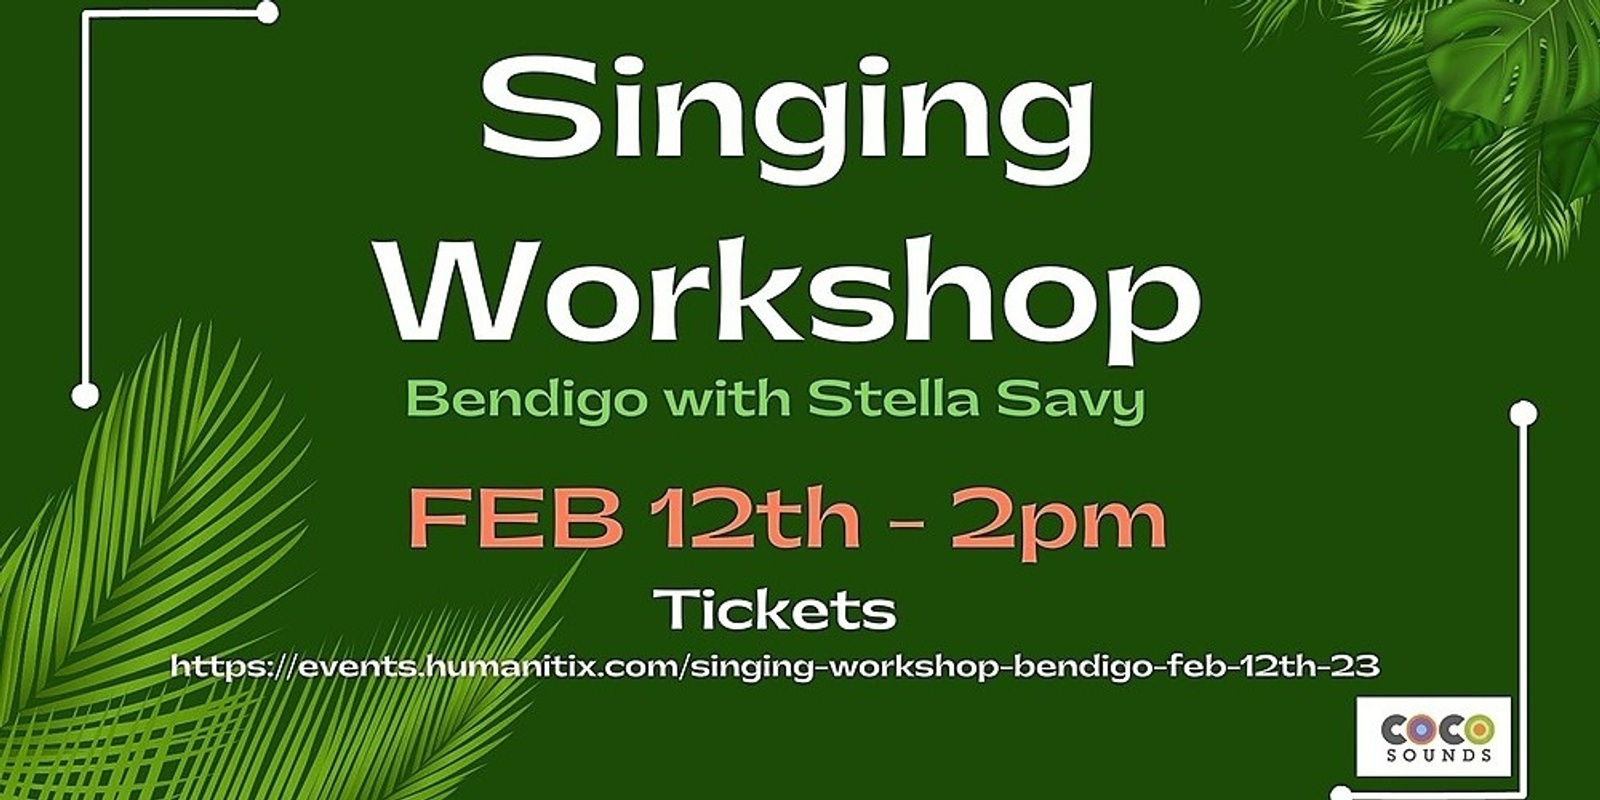 Banner image for Singing Workshop Bendigo, FEB 12th, 23.